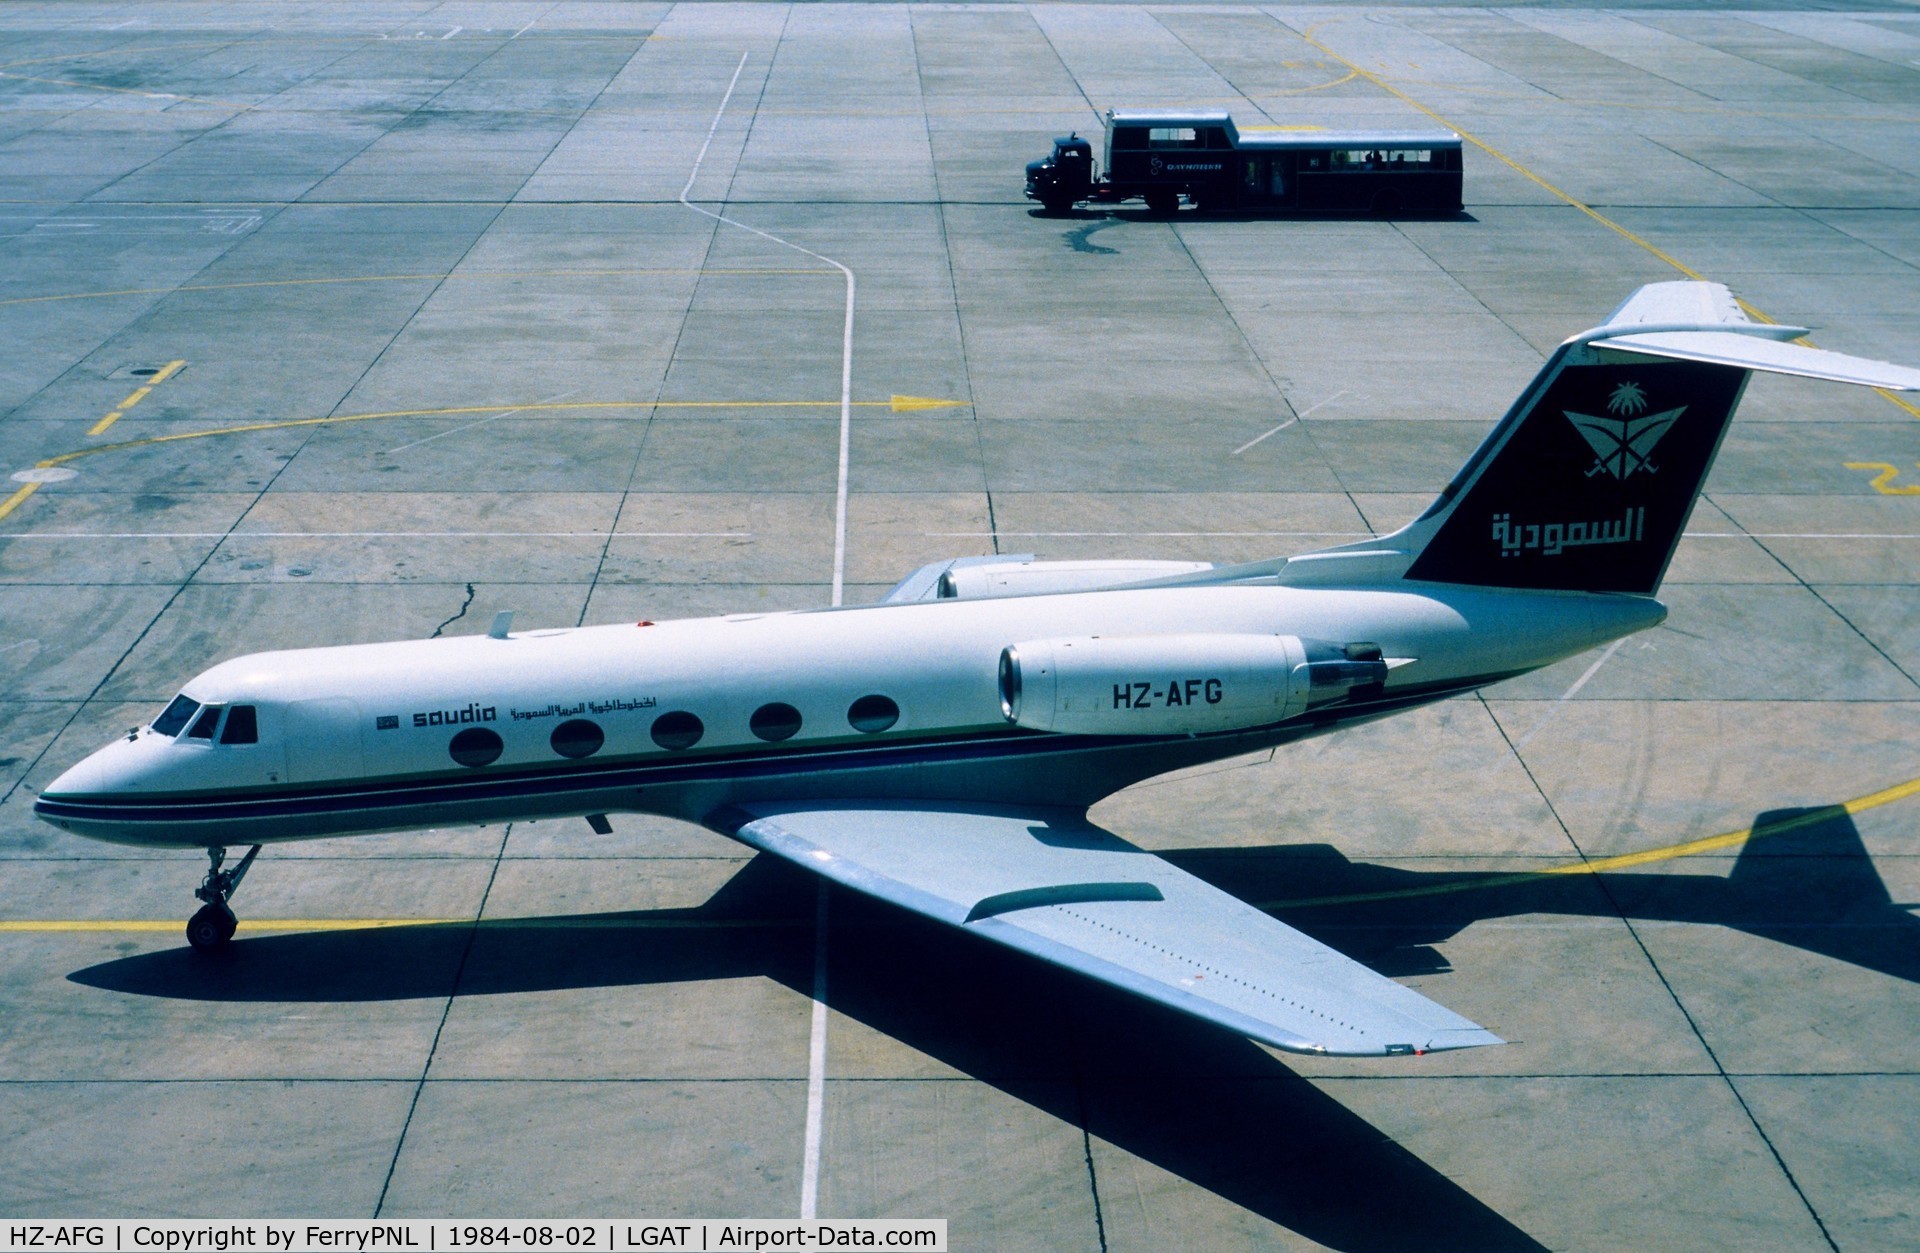 HZ-AFG, 1975 Grumman G-1159 Gulfstream II C/N 175, Saudia GII arriving for a fuel stop